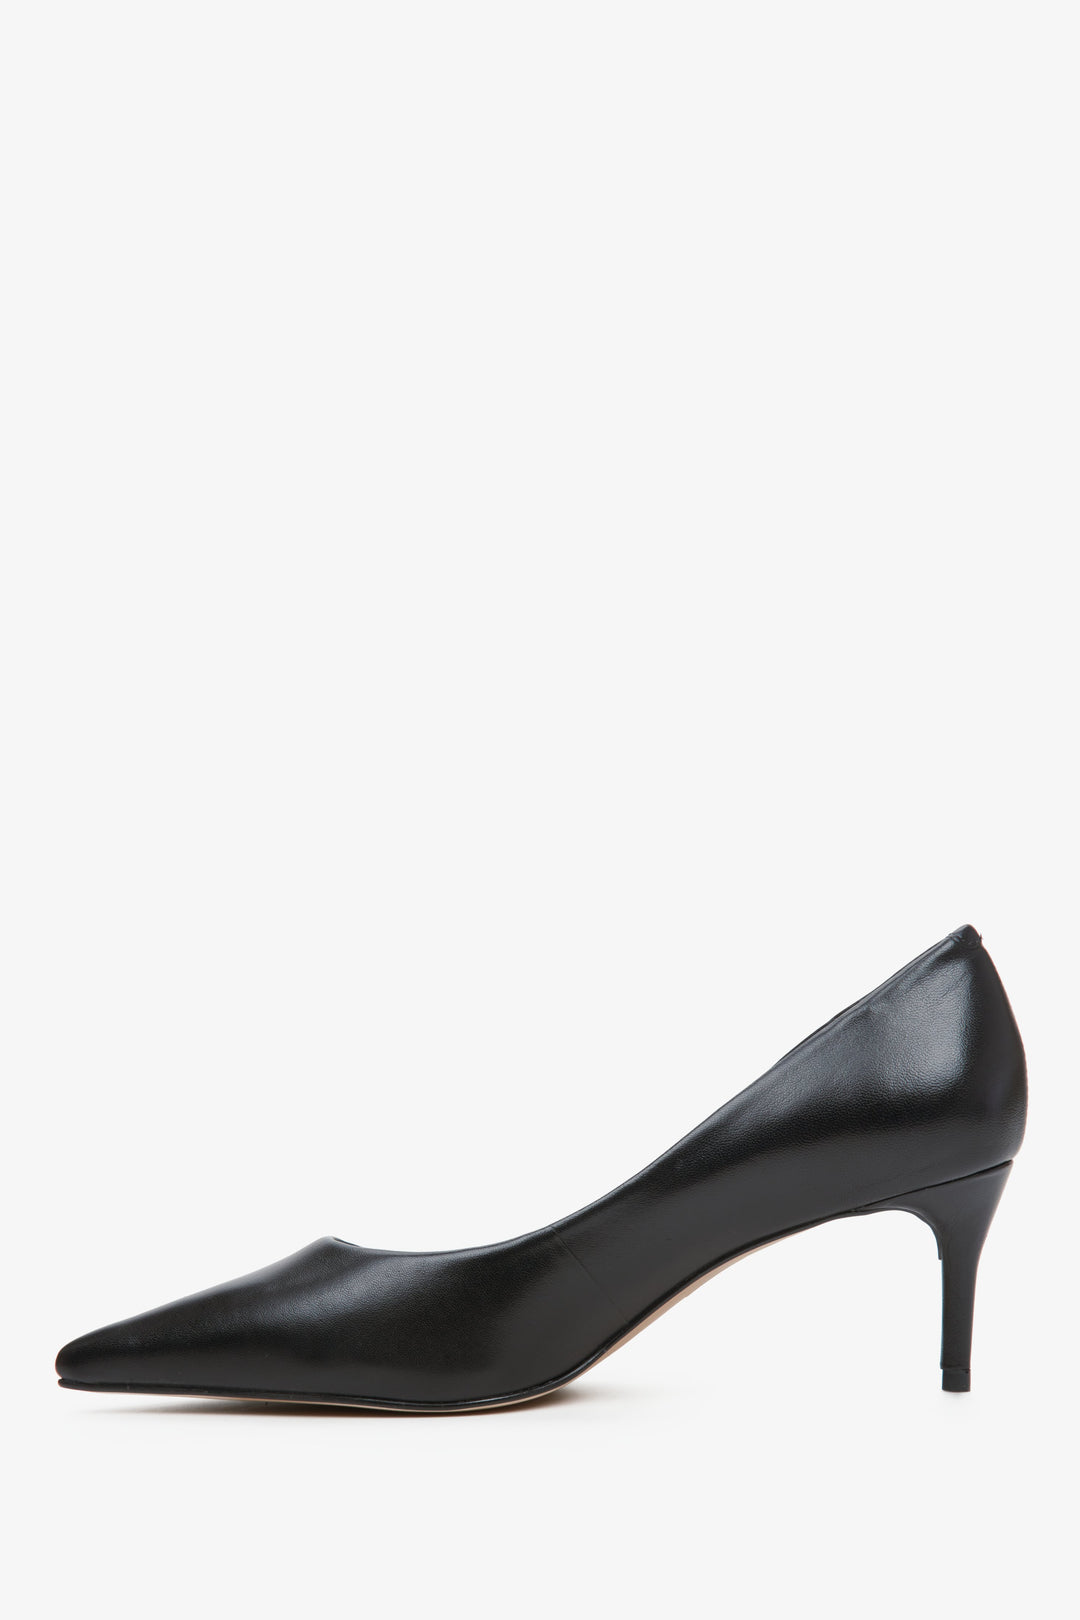 Women's black leather pumps by Estro - shoe profile.